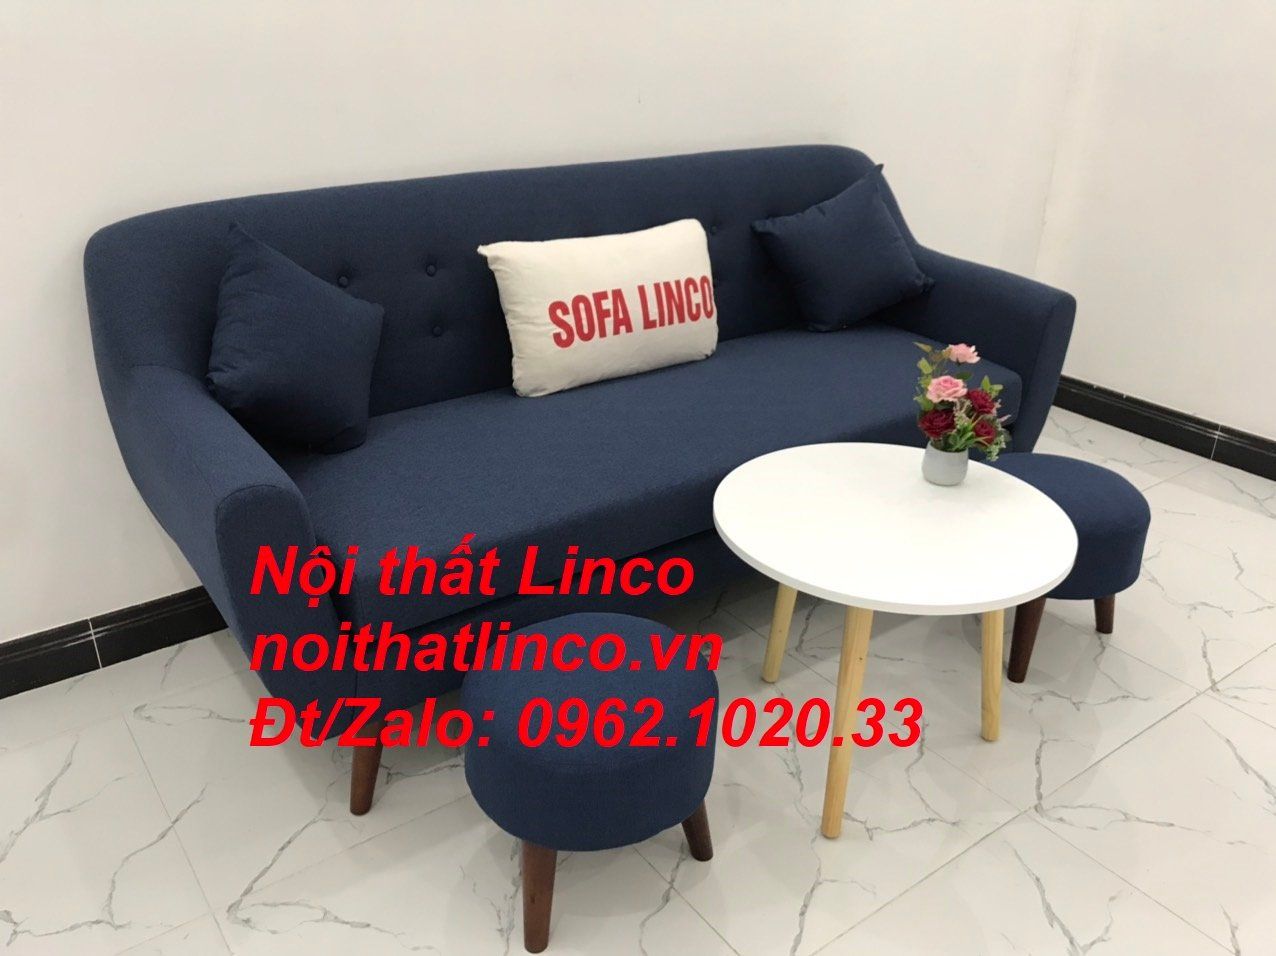  Bộ bàn ghế salon sofa băng xanh dương đậm đen dài 1m9 giá rẻ 